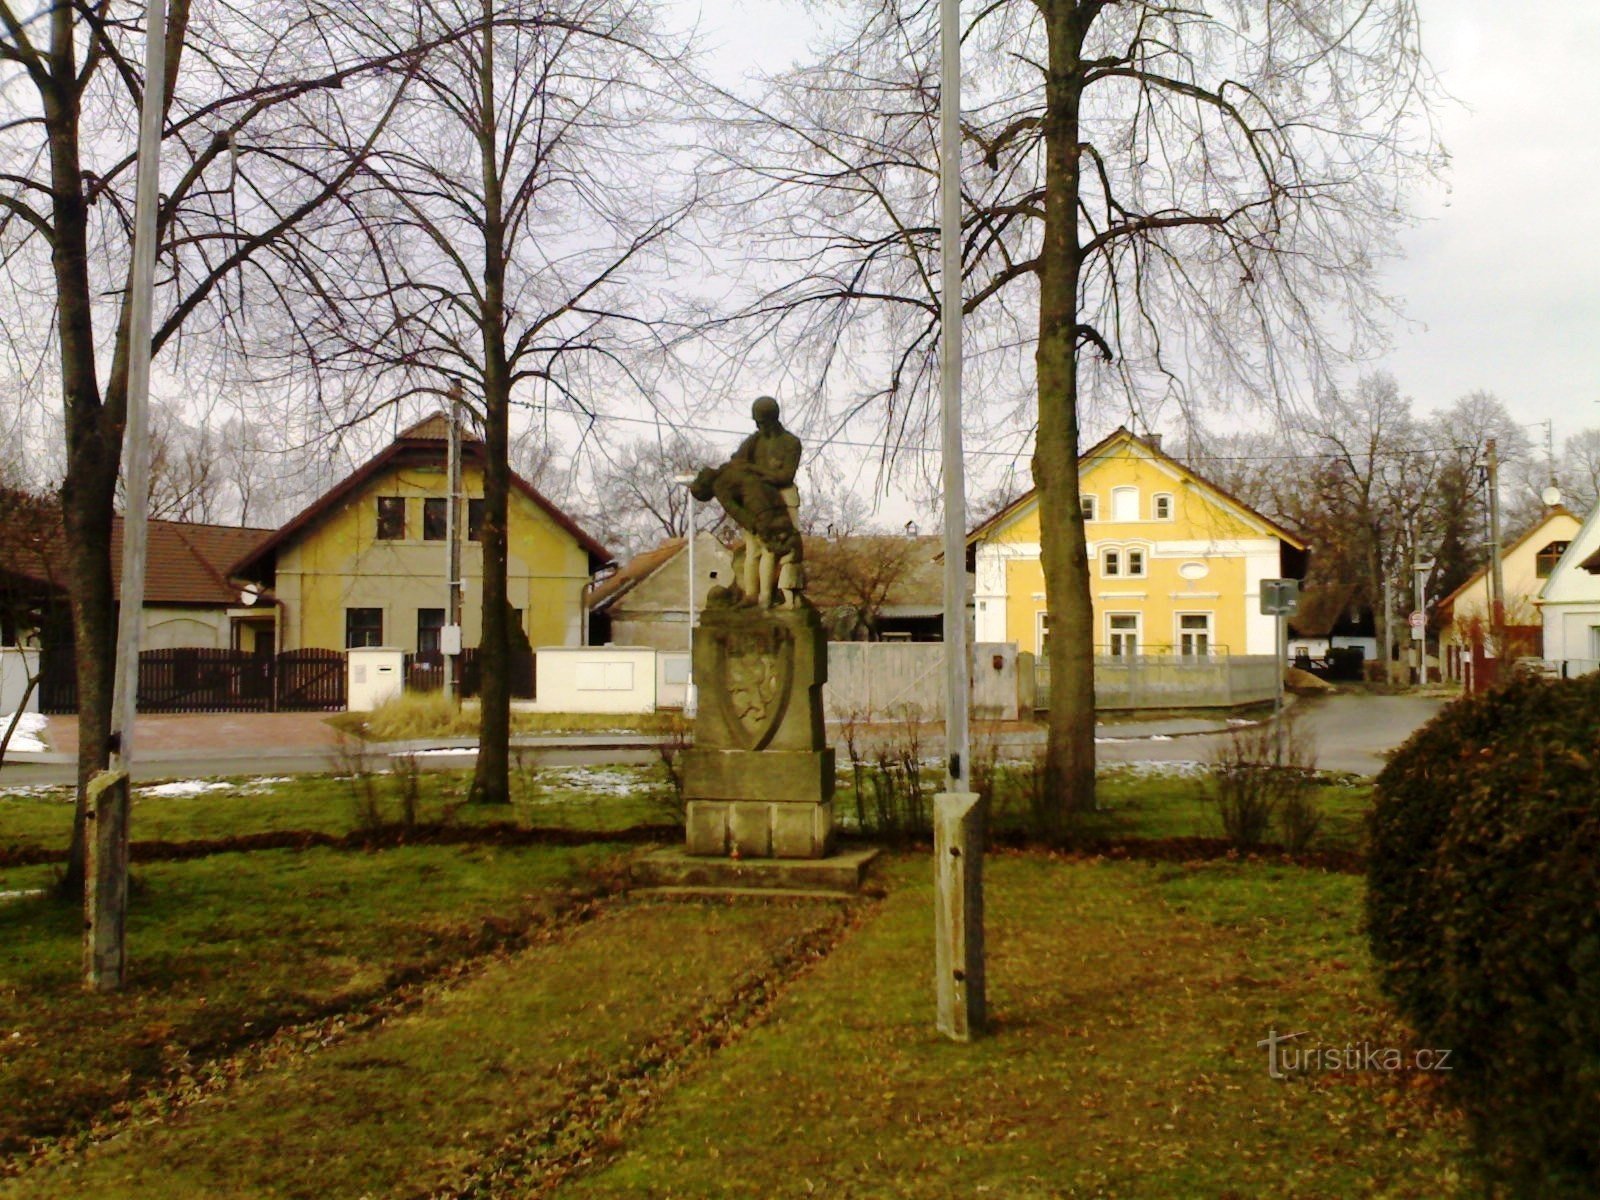 Malšova lhota - een monument voor de oorlogsslachtoffers